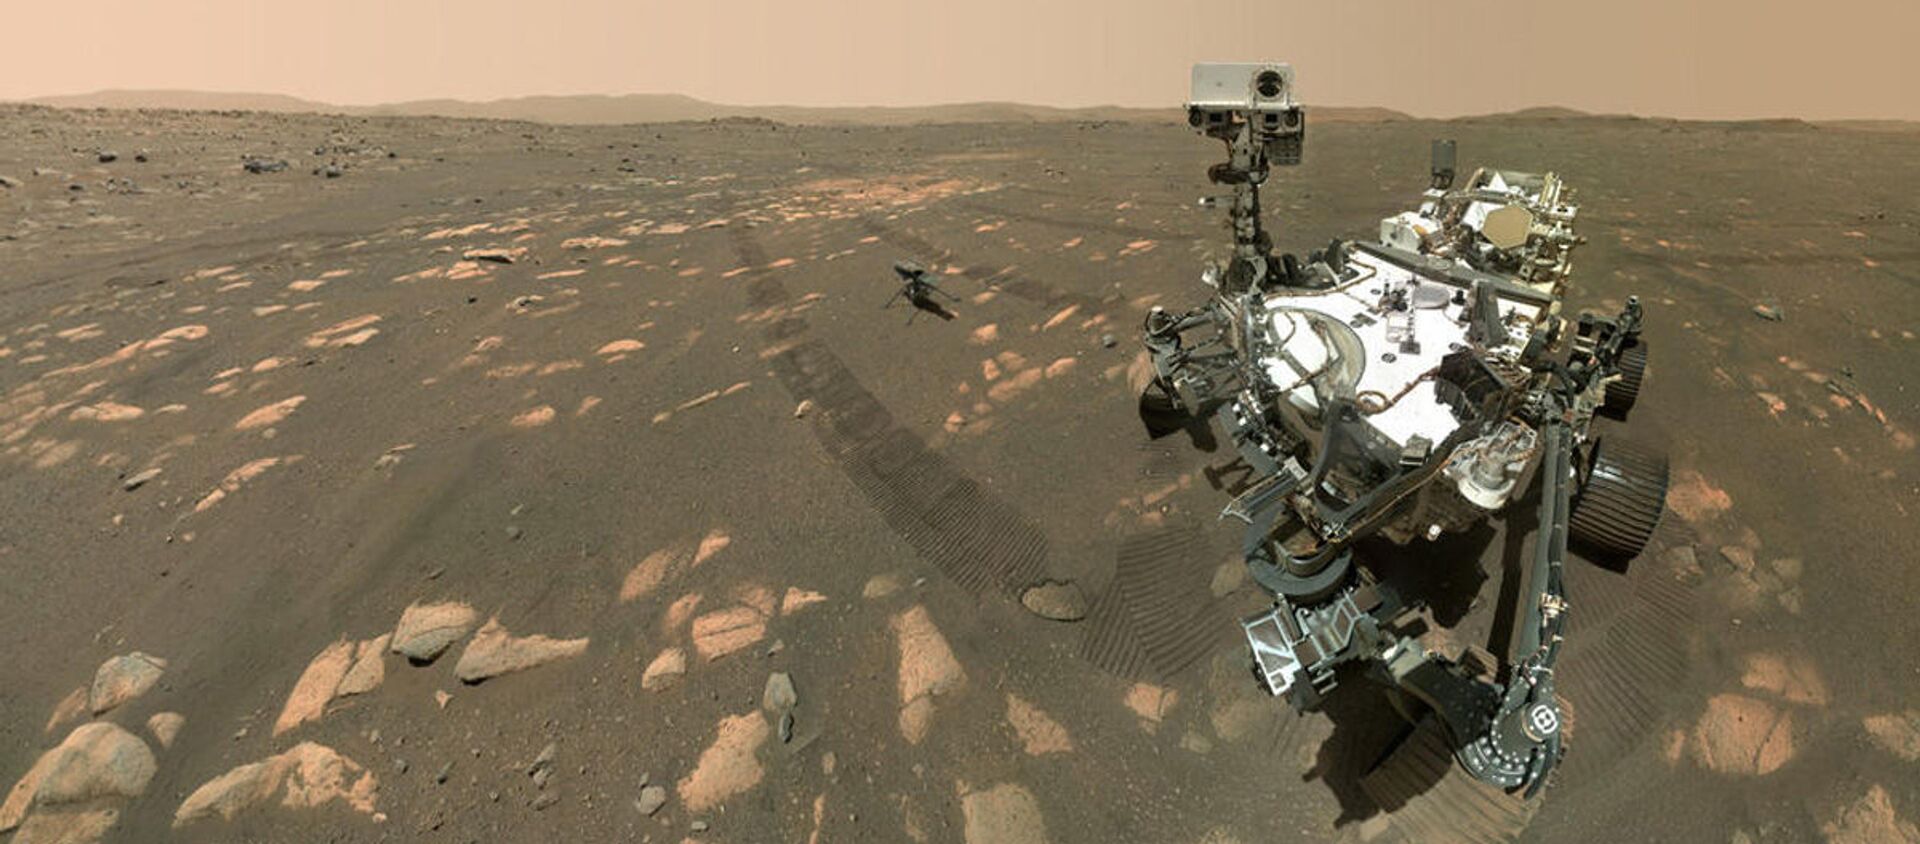 مریخ نورد آمریکایی توانست از جو مریخ اکسیژن استخراج کند - اسپوتنیک ایران  , 1920, 22.04.2021